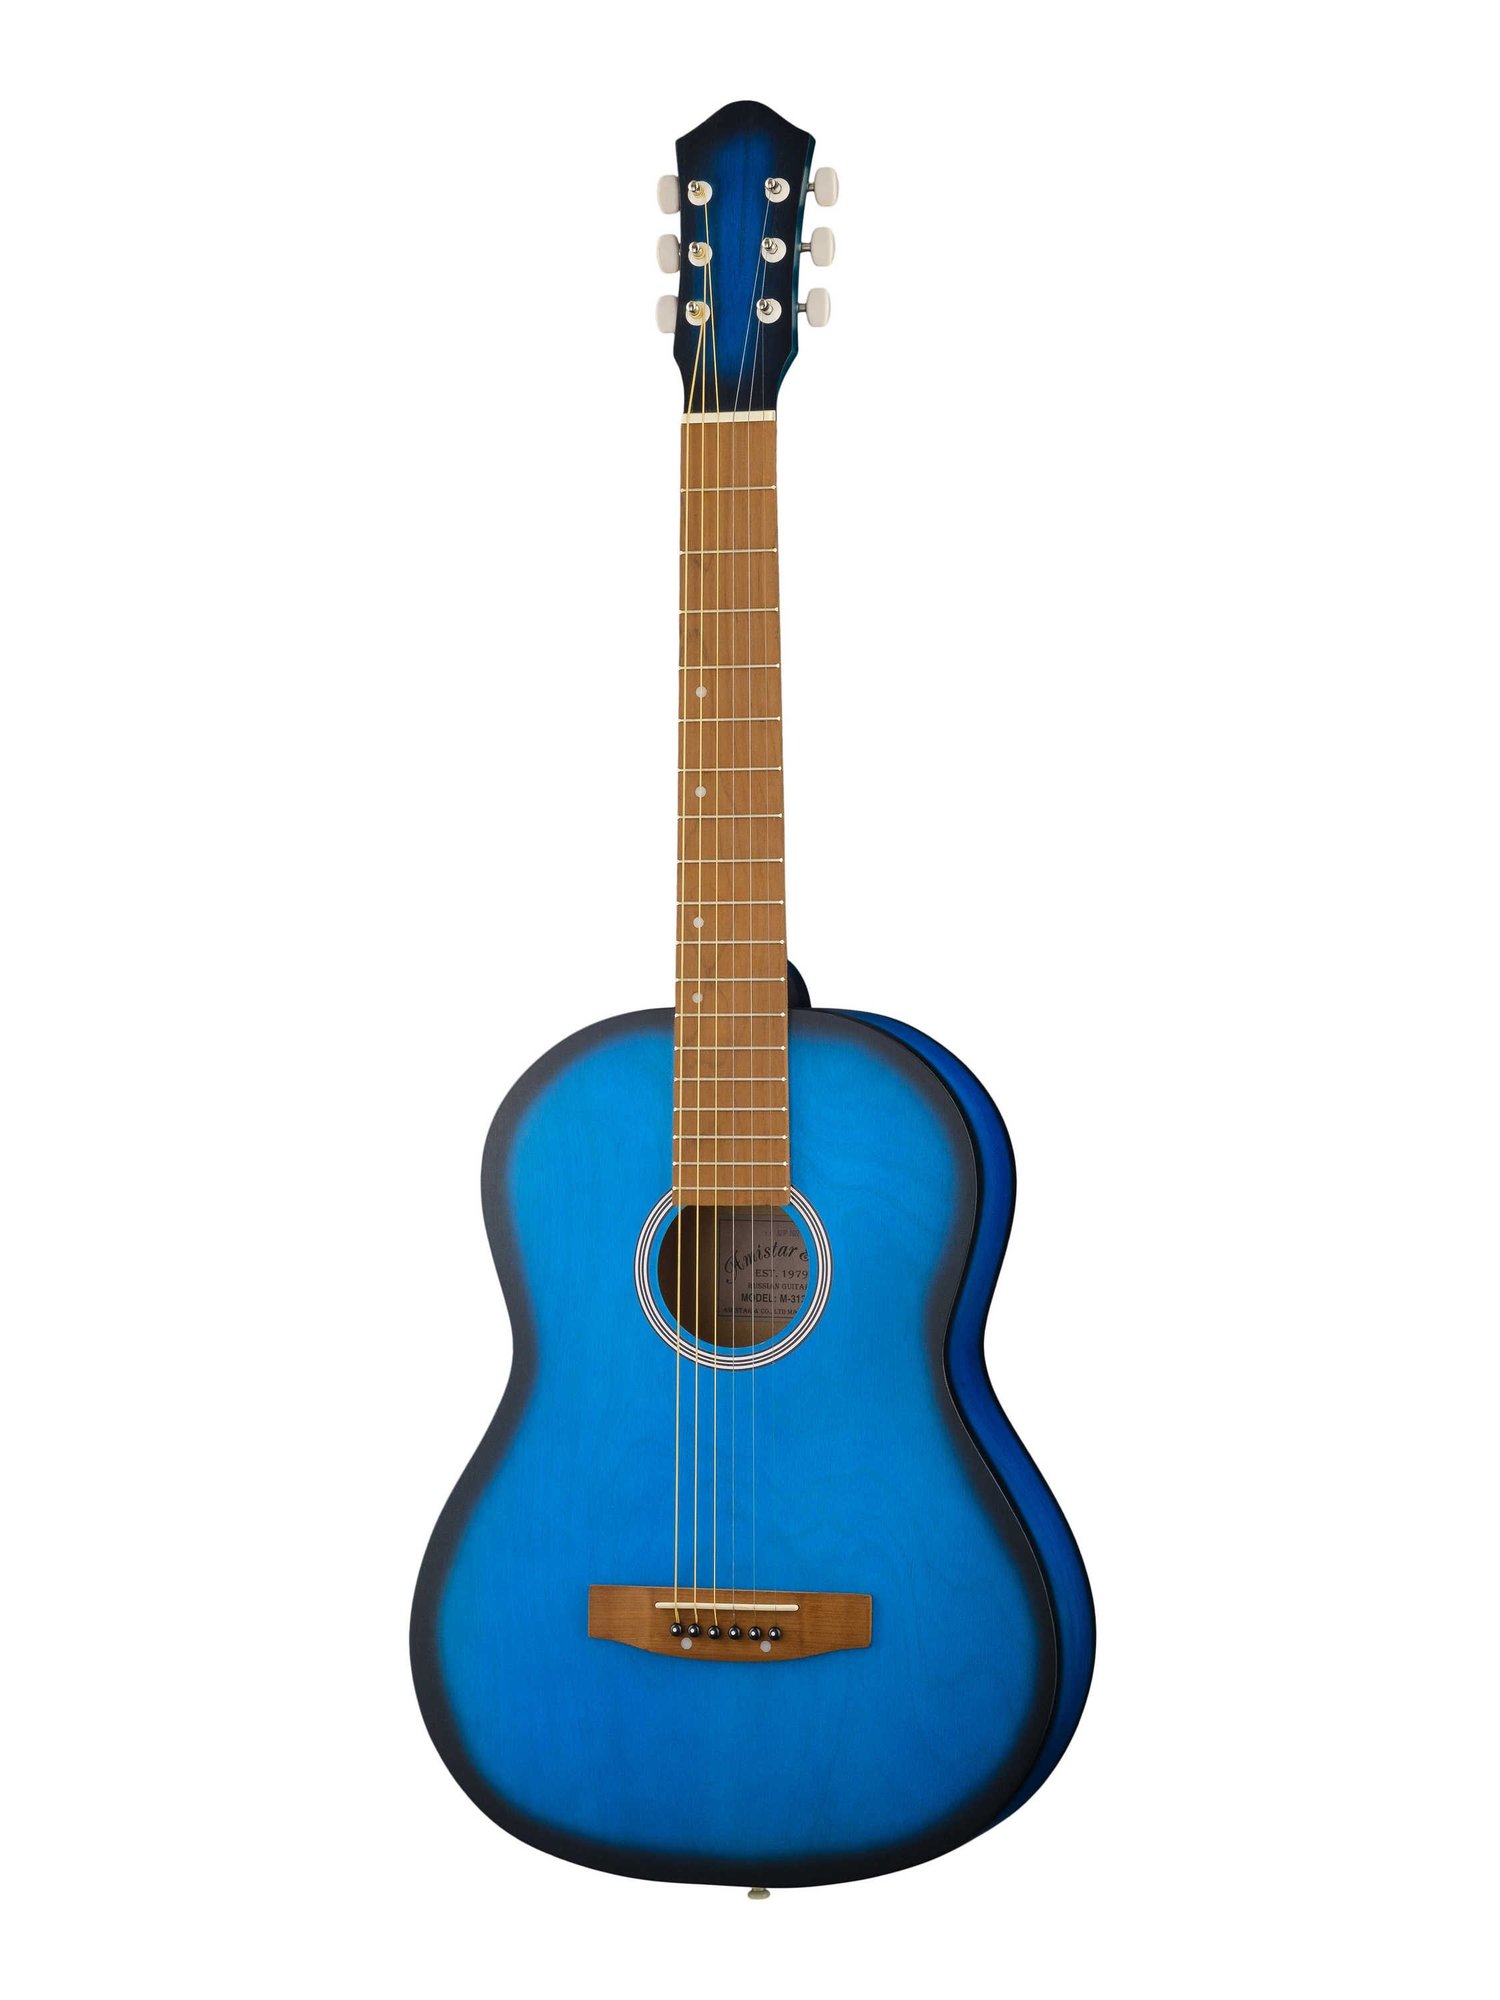 Акустические гитары Амистар M-313-BL гитарные медиаторы разной толщины аксессуары для гитары аксессуары для музыкальных инструментов 0 5 0 75 1 0 мм медиаторы